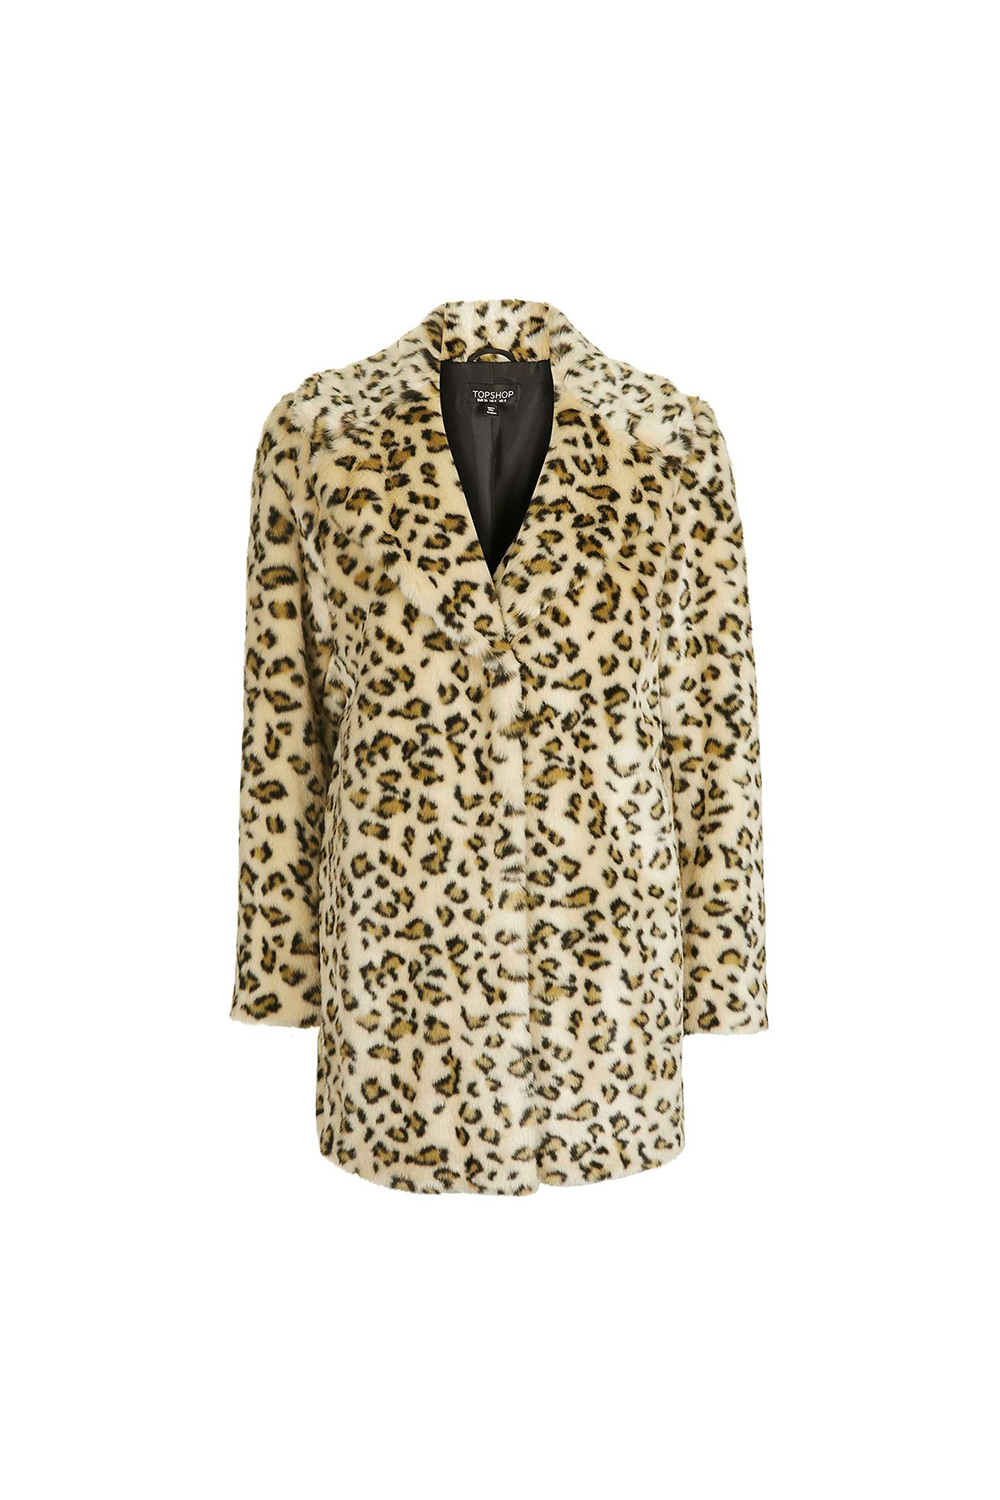 TOPSHOP faux fur coat, approx. $158